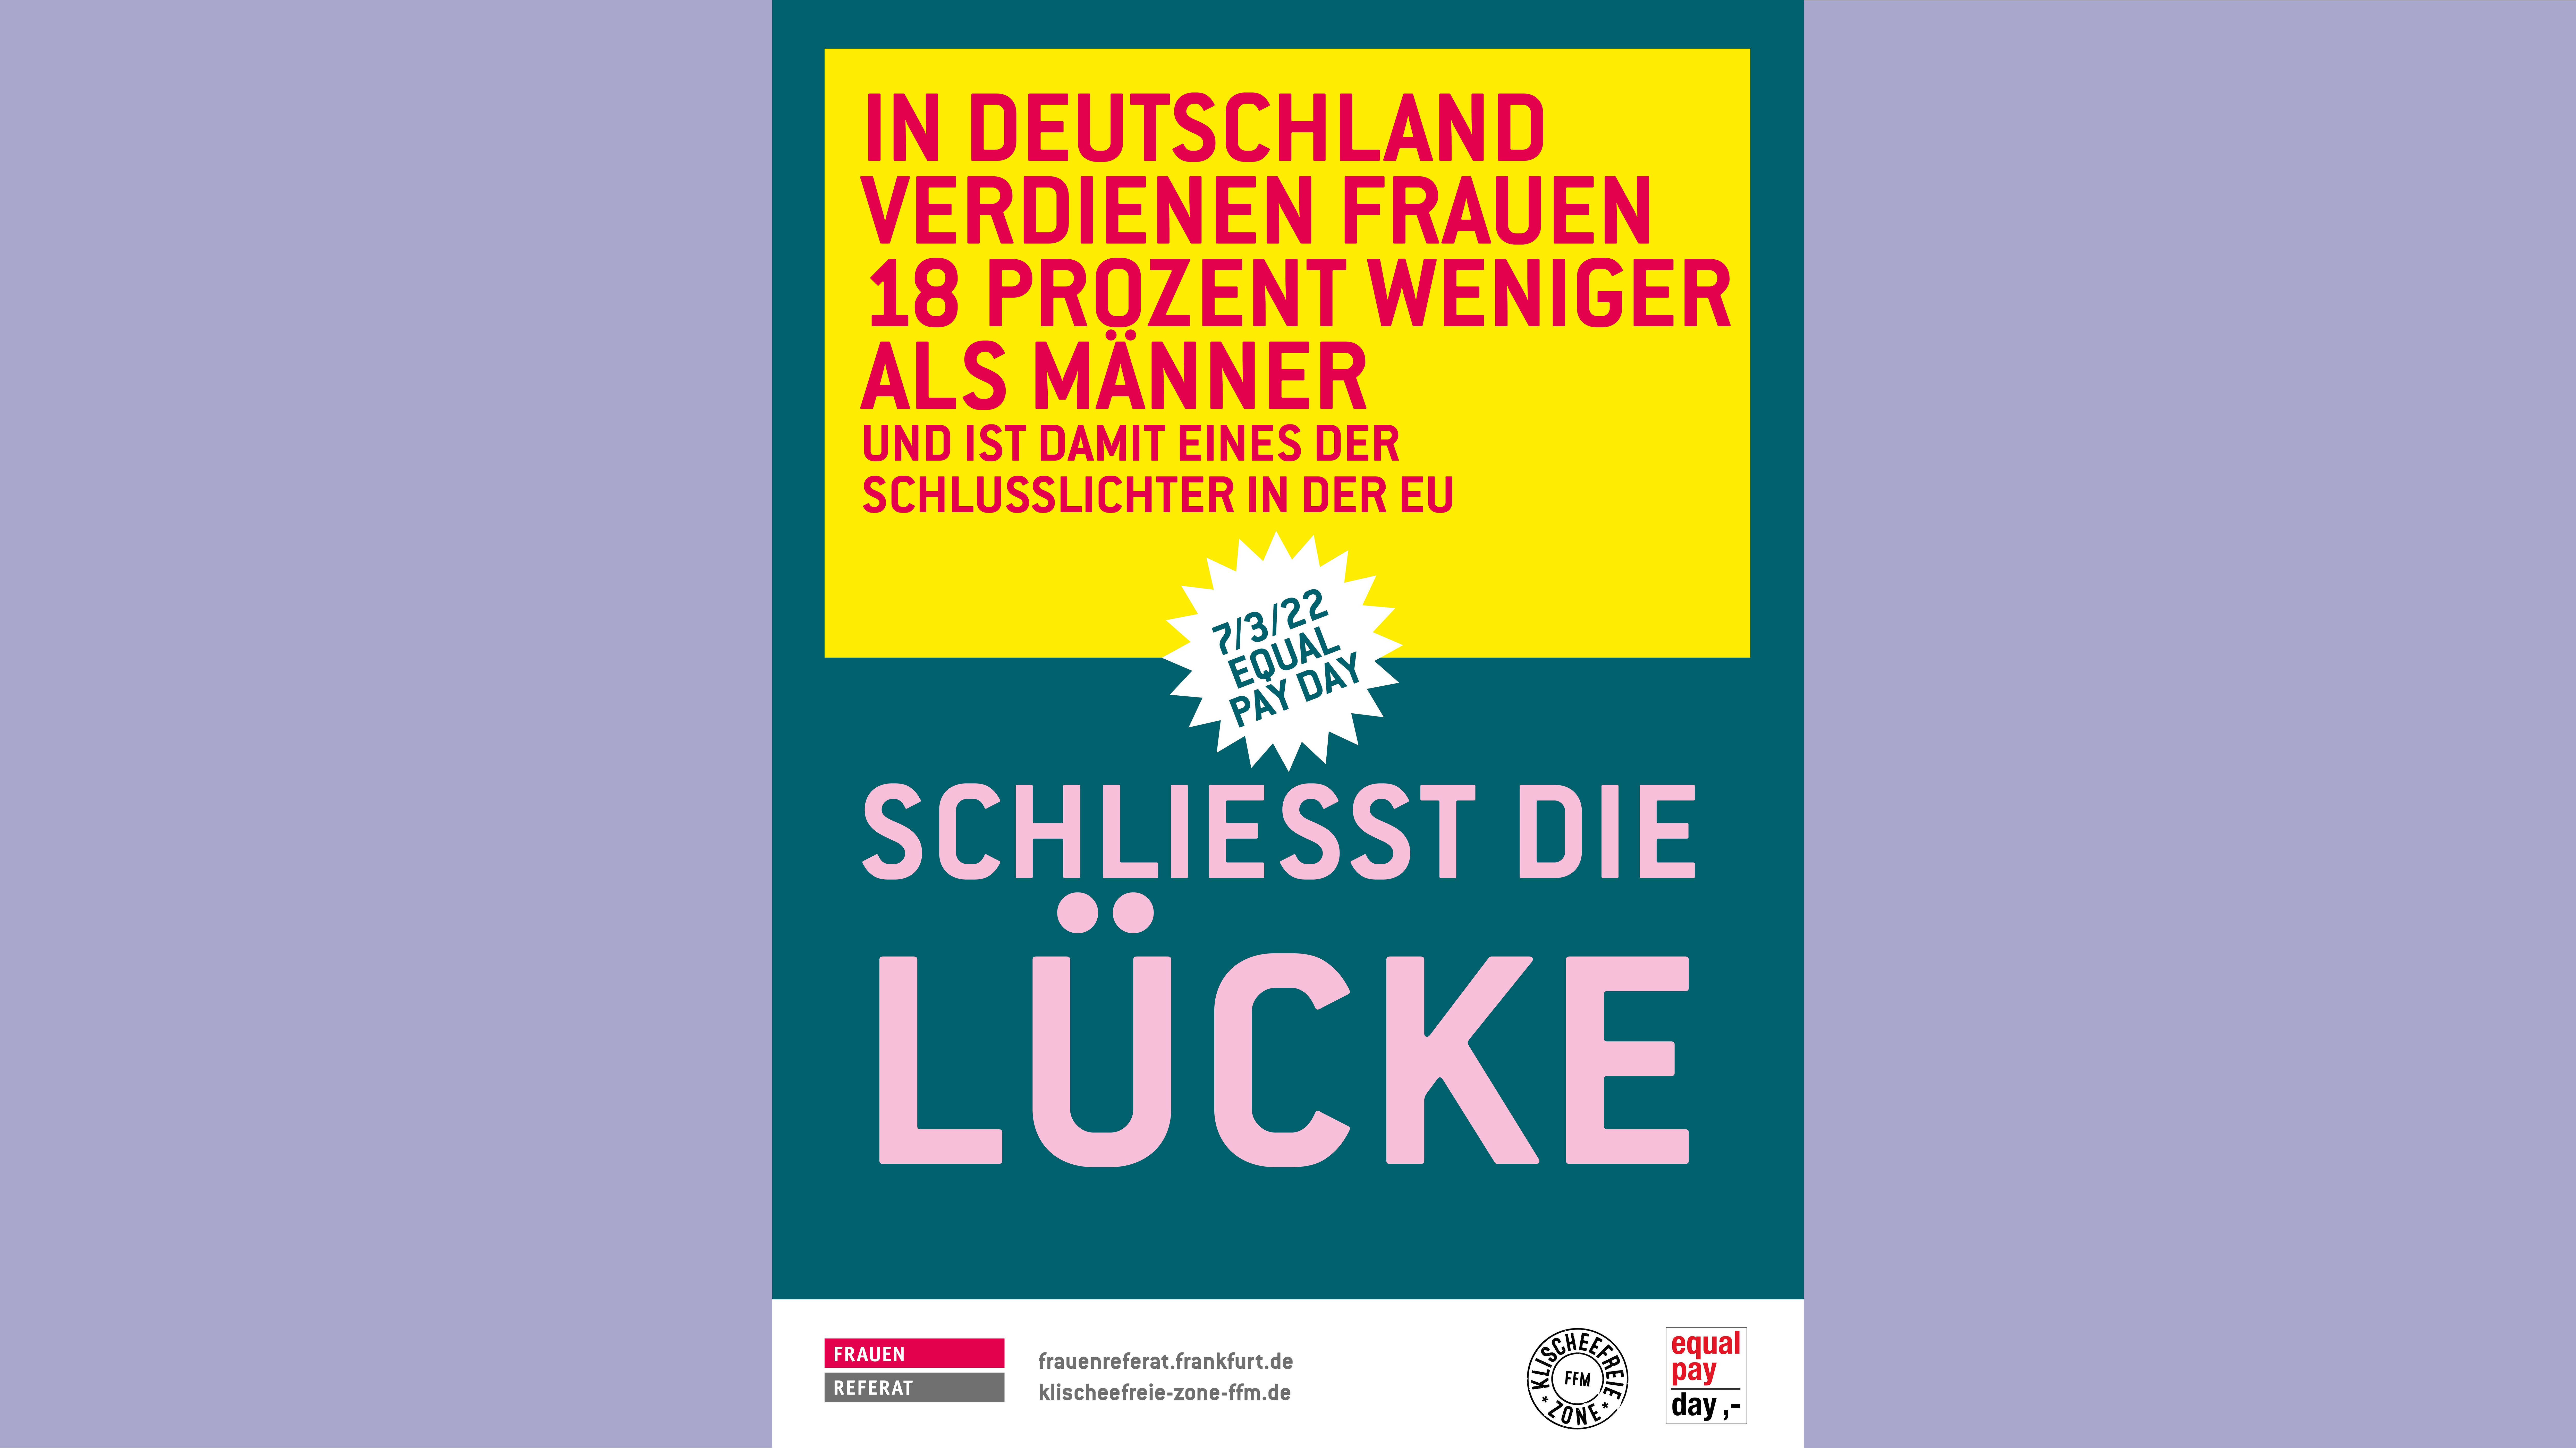 Plakat mit der Aufschrift "In Deutschland verdienen Frauen 18 Prozent weniger als Männer - und ist damit eines der Schlusslichter in der EU